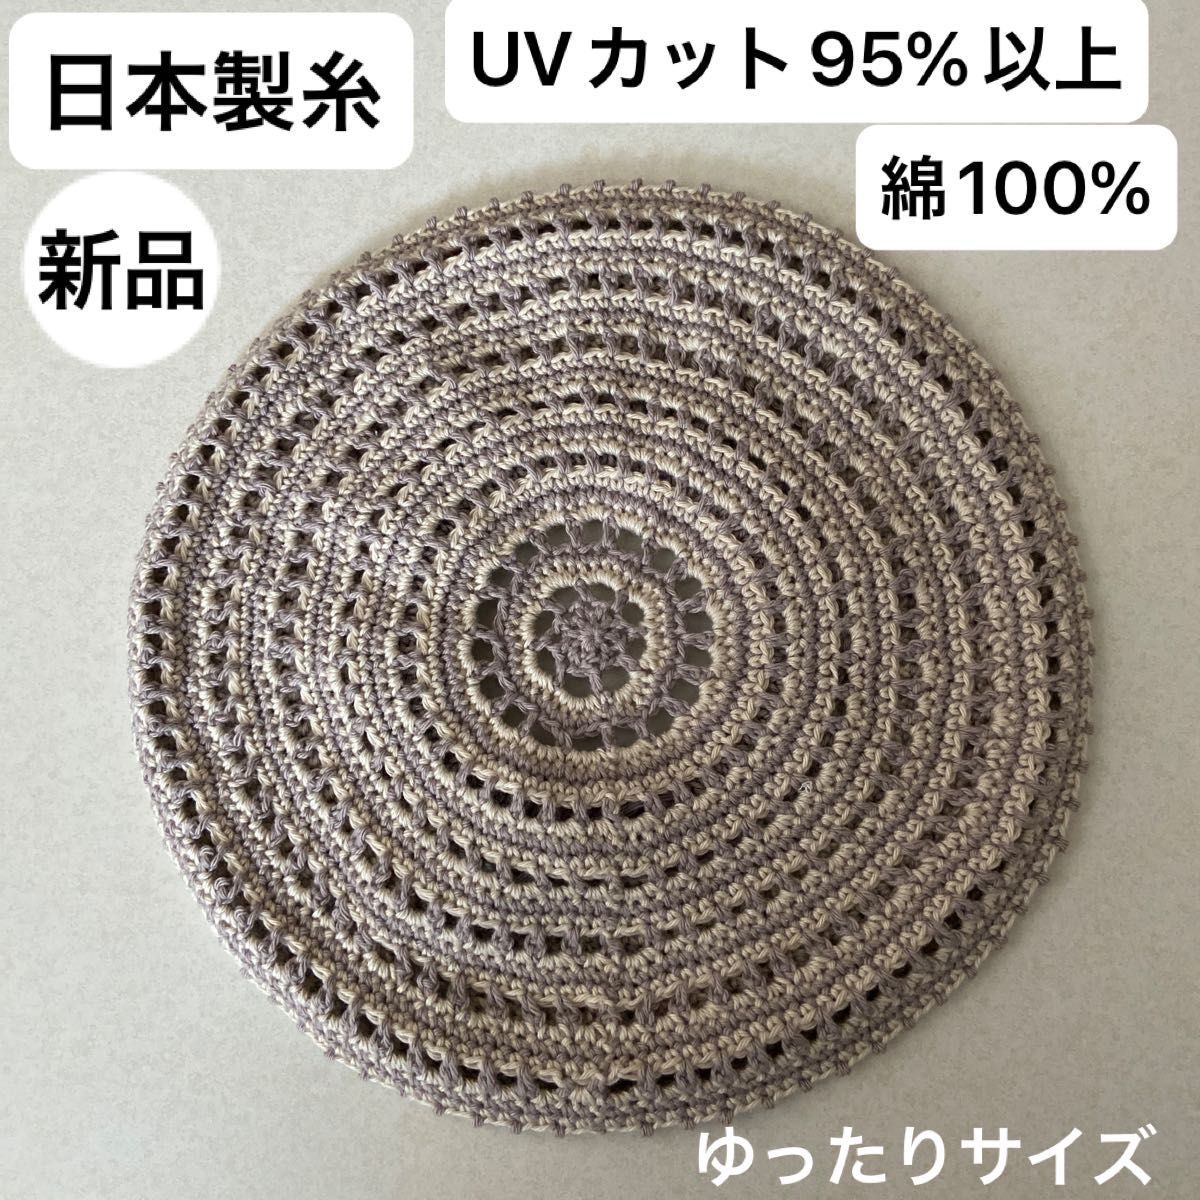 新品未使用・UVカット95%以上・日本製・綿100%・手編み・ベレー帽・ゴム調整・汗に強く柔らかな洗えるニット ・ゆったりサイズ